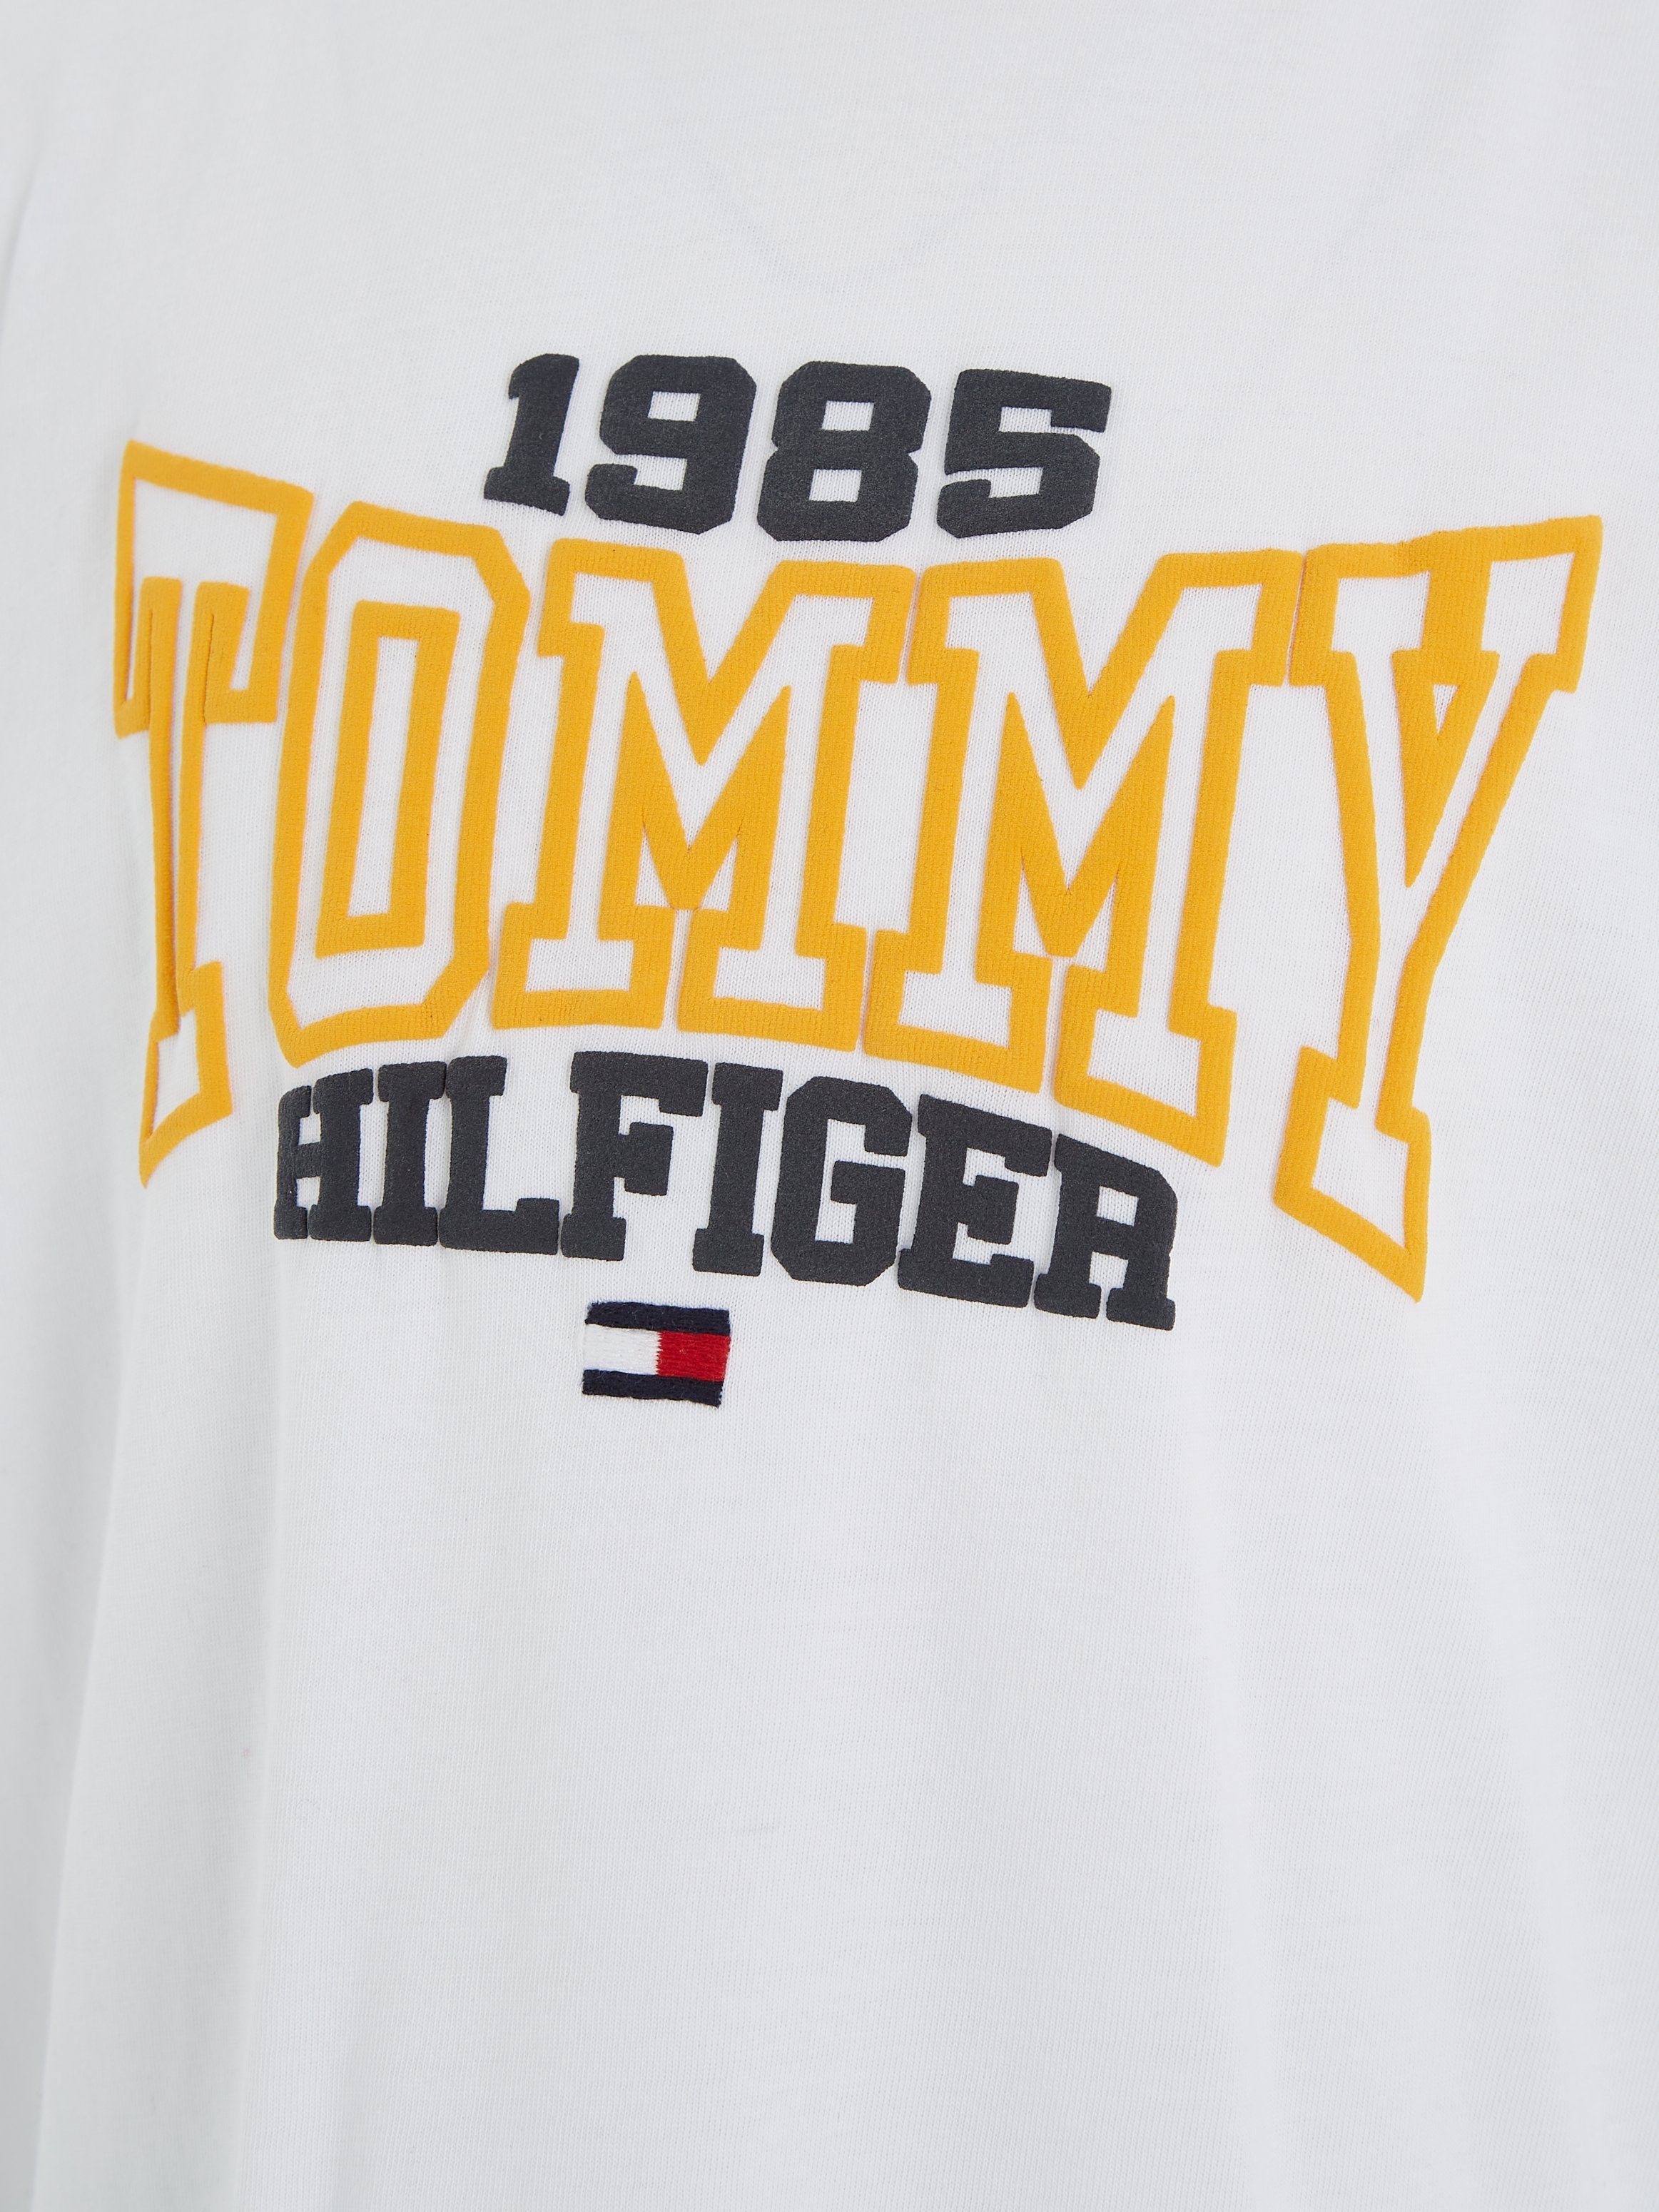 Tommy Hilfiger S/S Print mit Hilfgier Varsity T-Shirt Tommy 1985 White 1985 VARSITY TOMMY modischem TEE